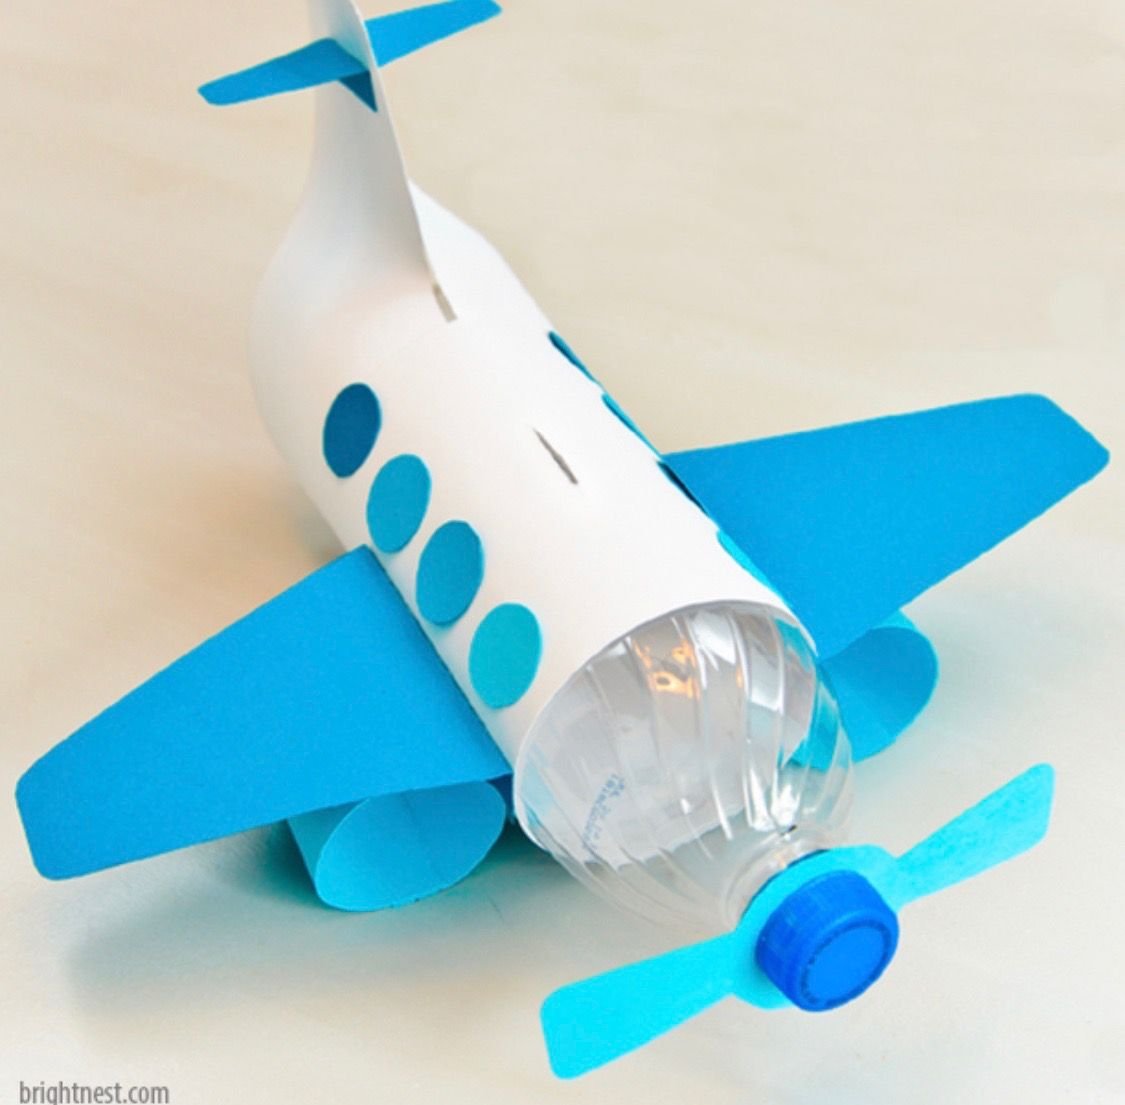 Поделка самолет своими руками: 100 идей в детский сад и школу